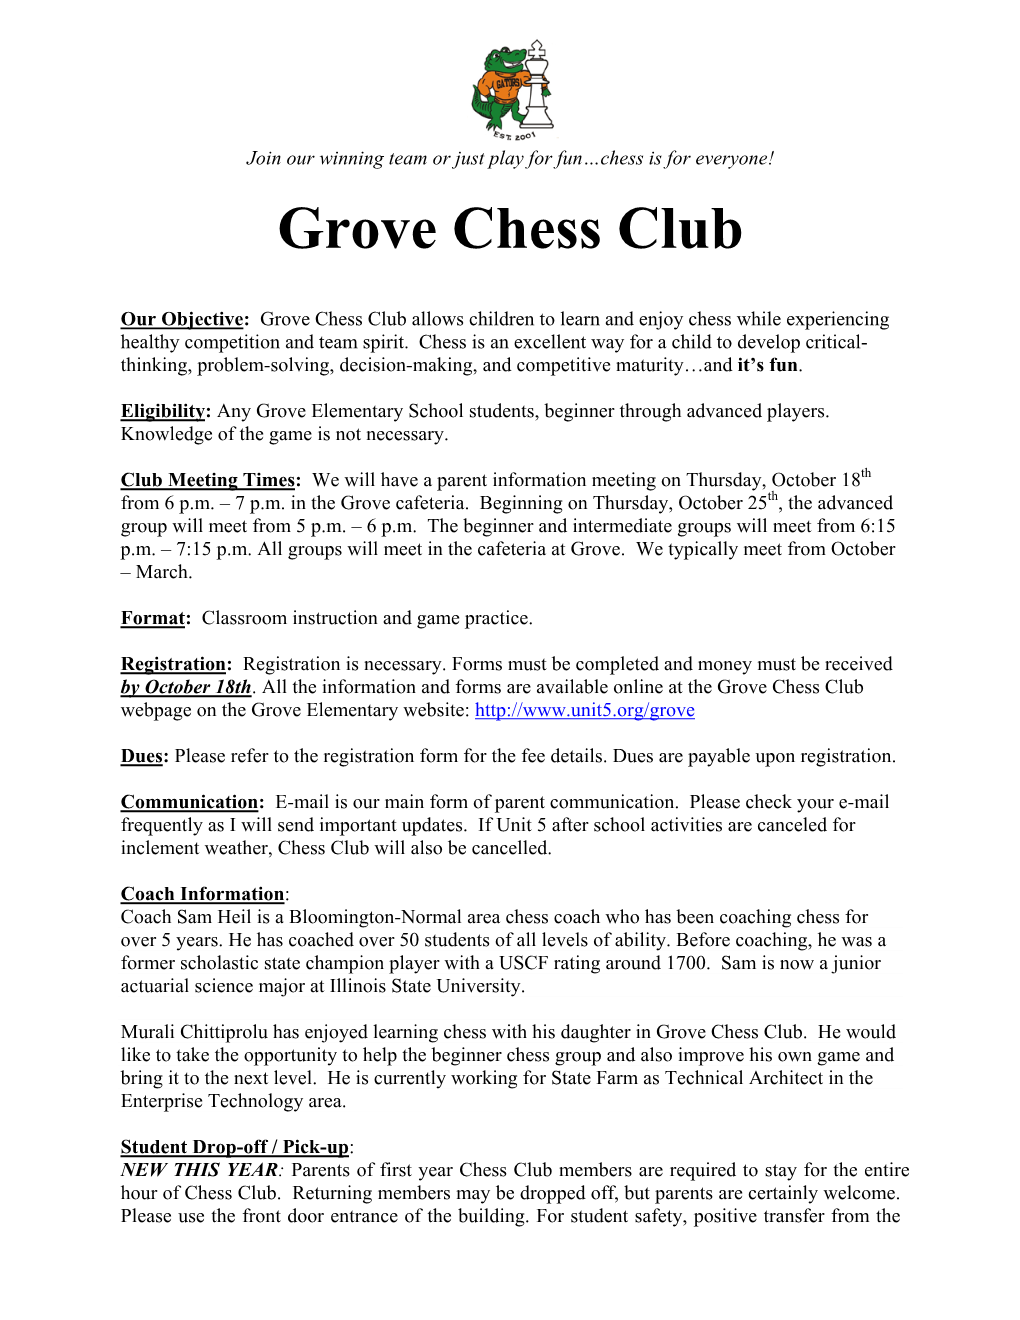 Grove Chess Club